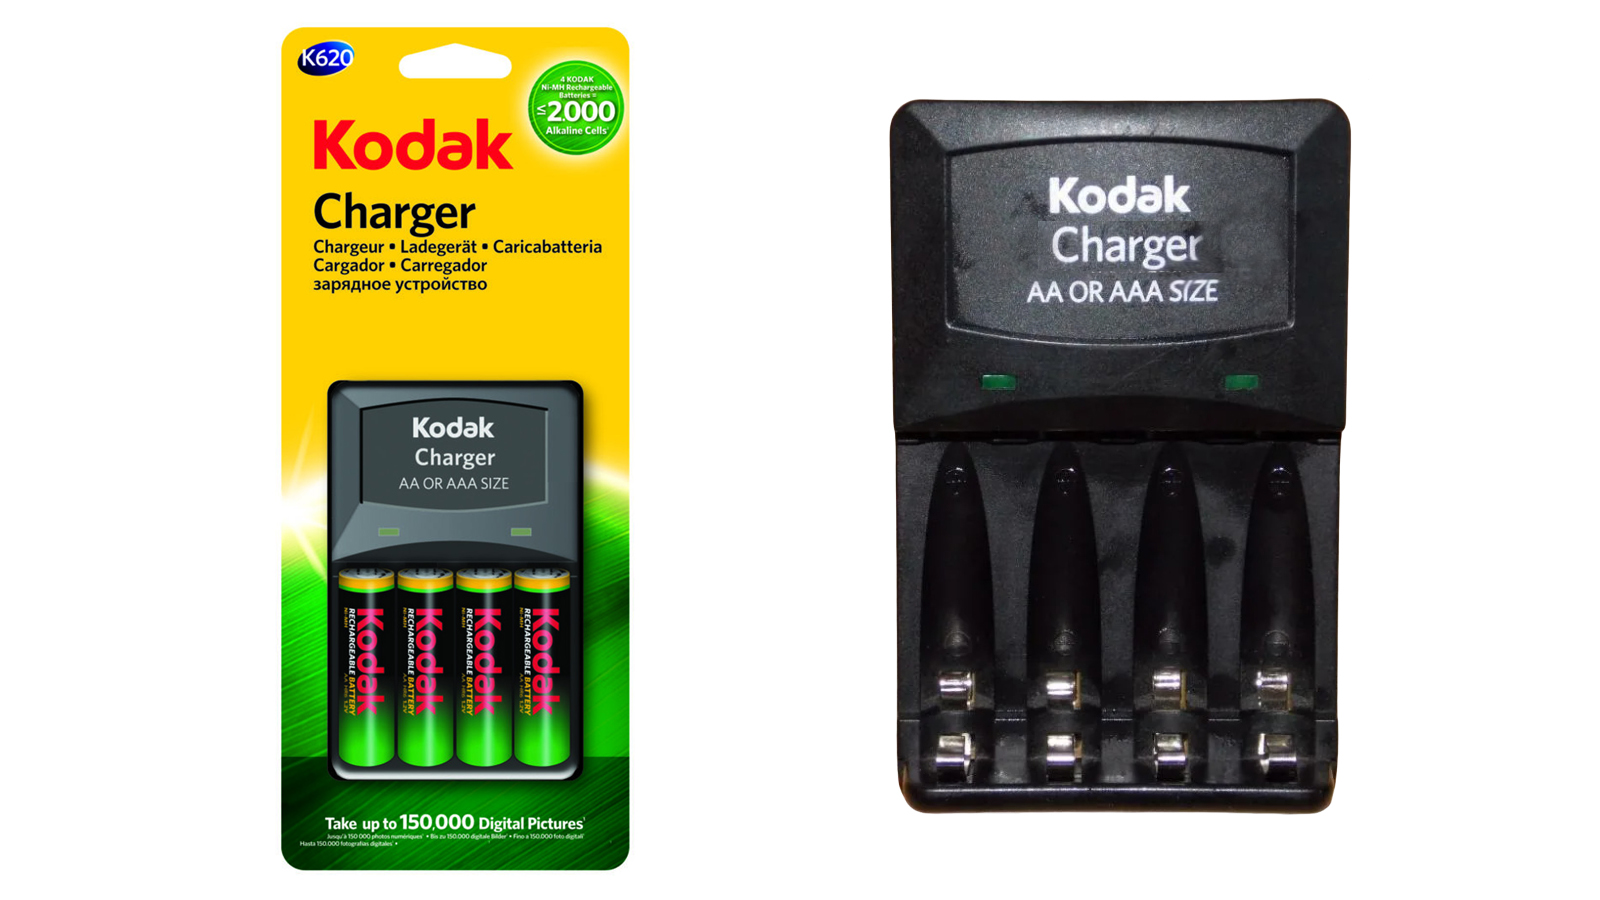 معرفی شارژر باتری کداک K620 همراه باتری kodak